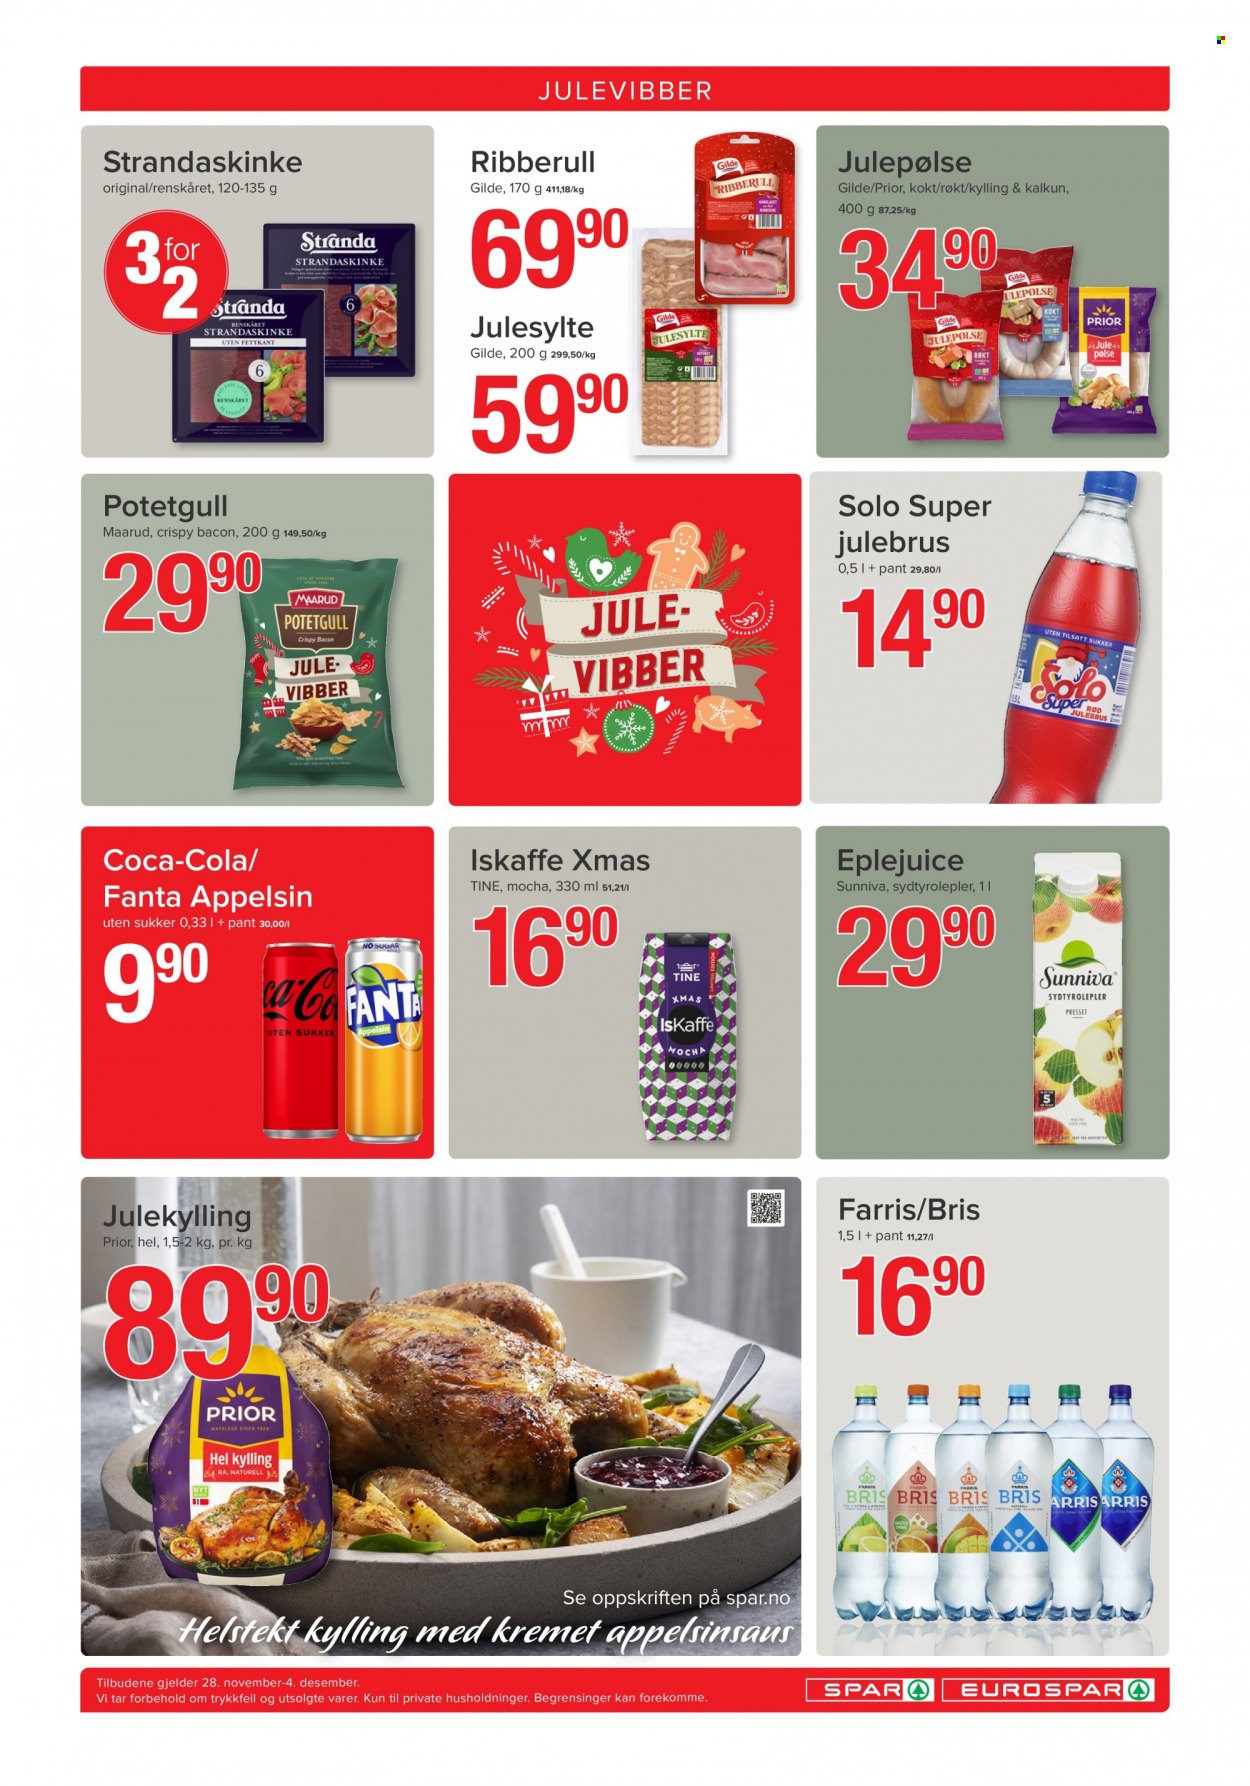 thumbnail - Kundeavis SPAR - 28.11.2022 - 4.12.2022 - Produkter fra tilbudsaviser - hel kylling, kyllingkjøtt, bacon, julepølse, Fanta, Coca-Cola. Side 8.